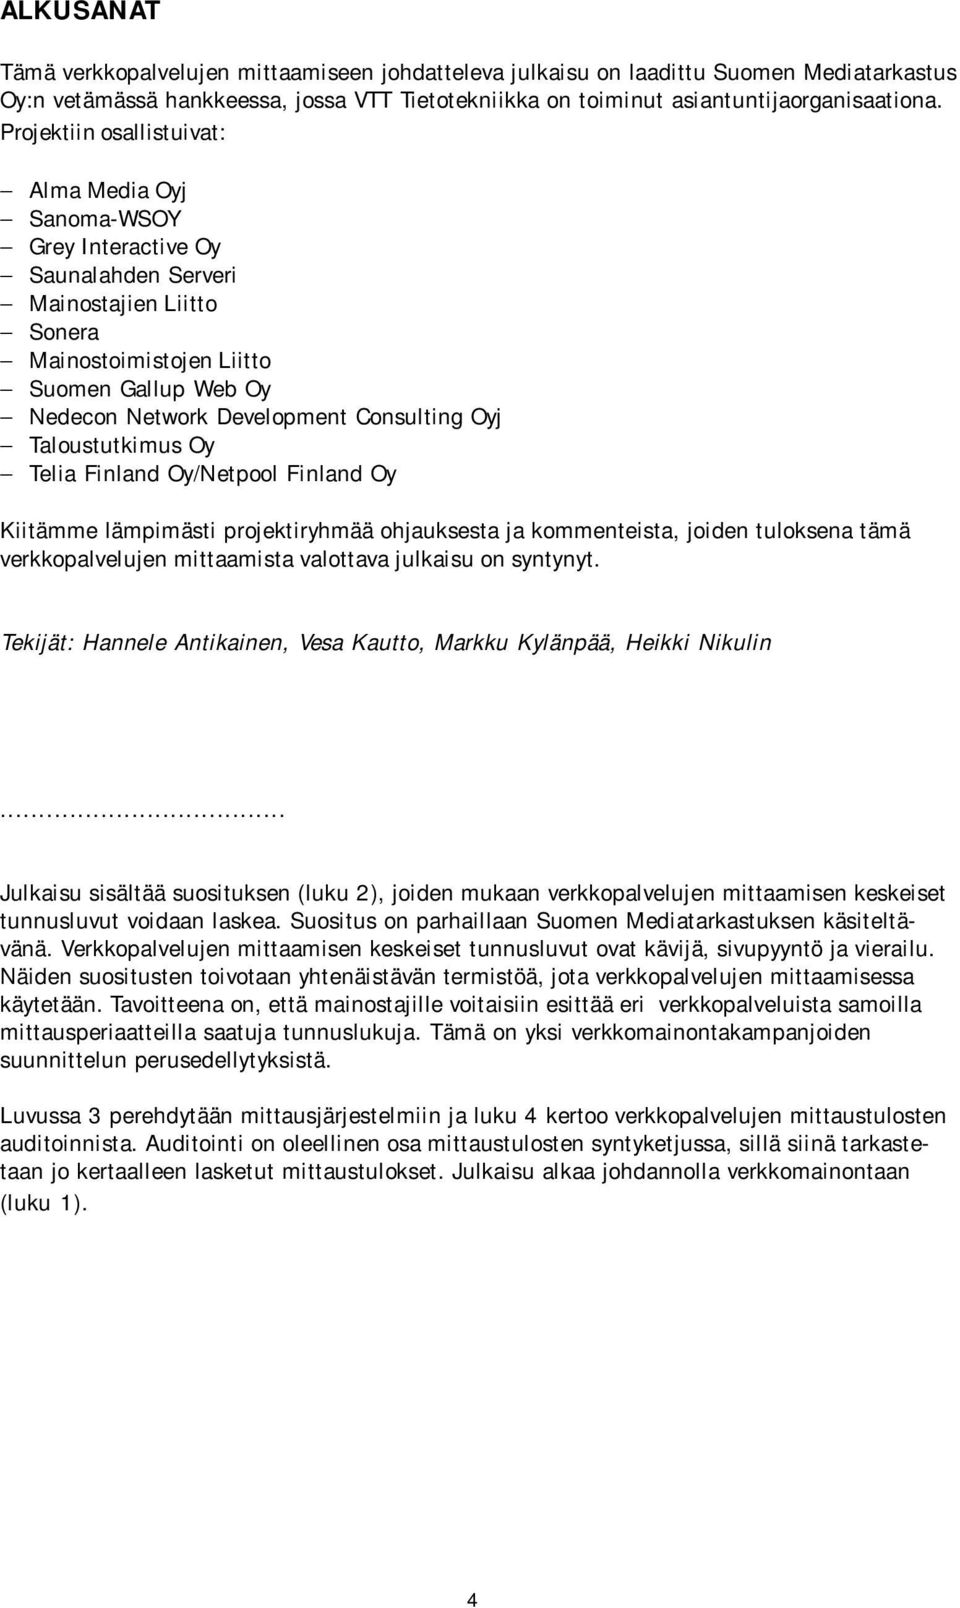 Consulting Oyj Taloustutkimus Oy Telia Finland Oy/Netpool Finland Oy Kiitämme lämpimästi projektiryhmää ohjauksesta ja kommenteista, joiden tuloksena tämä verkkopalvelujen mittaamista valottava